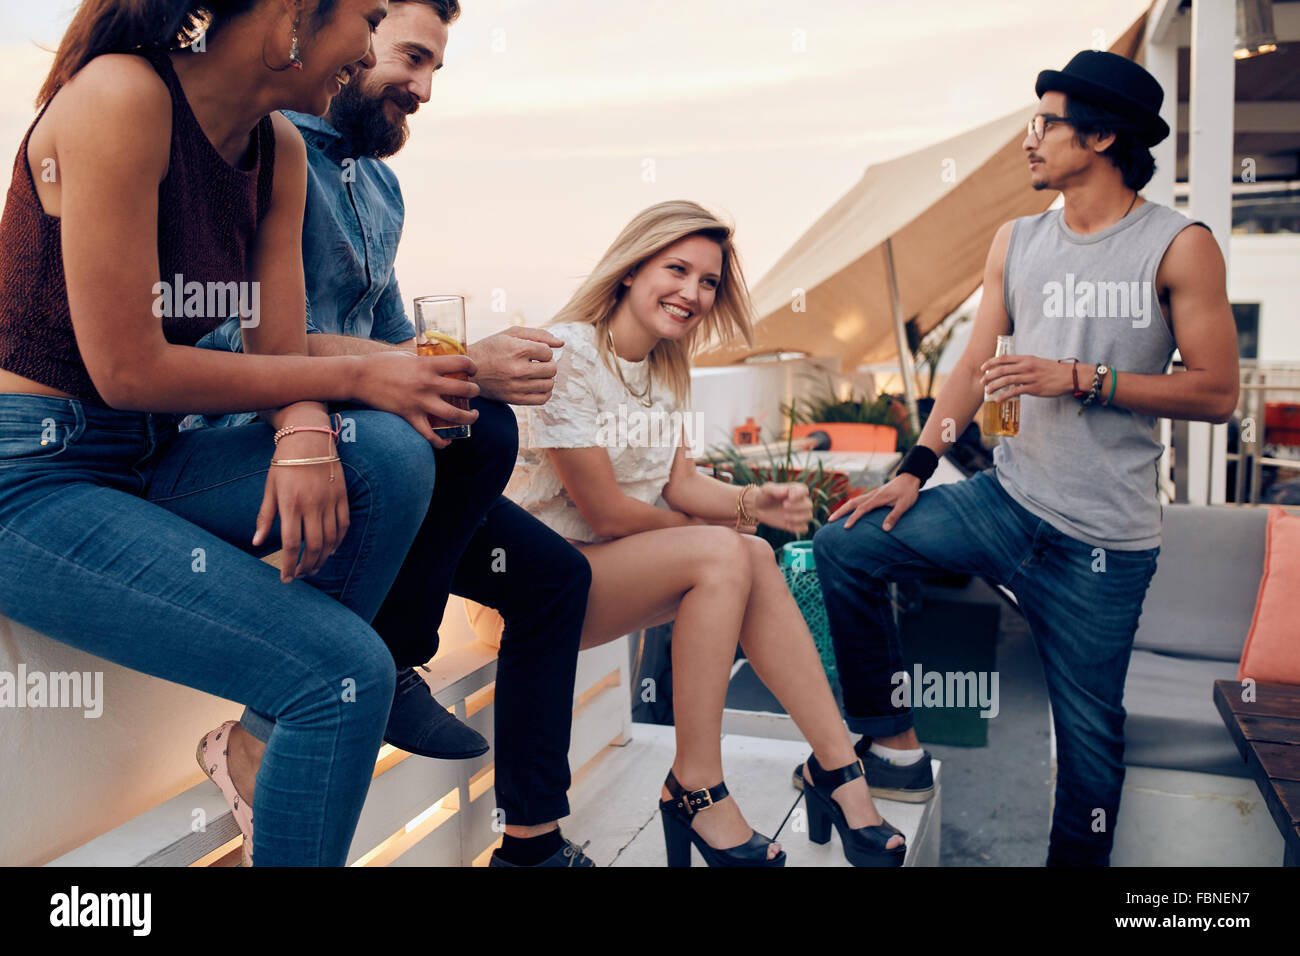 Gruppe von Freunden auf einem Dach, die Getränke hängen. Jugendliche feiern zusammen mit Cocktails. Stockfoto